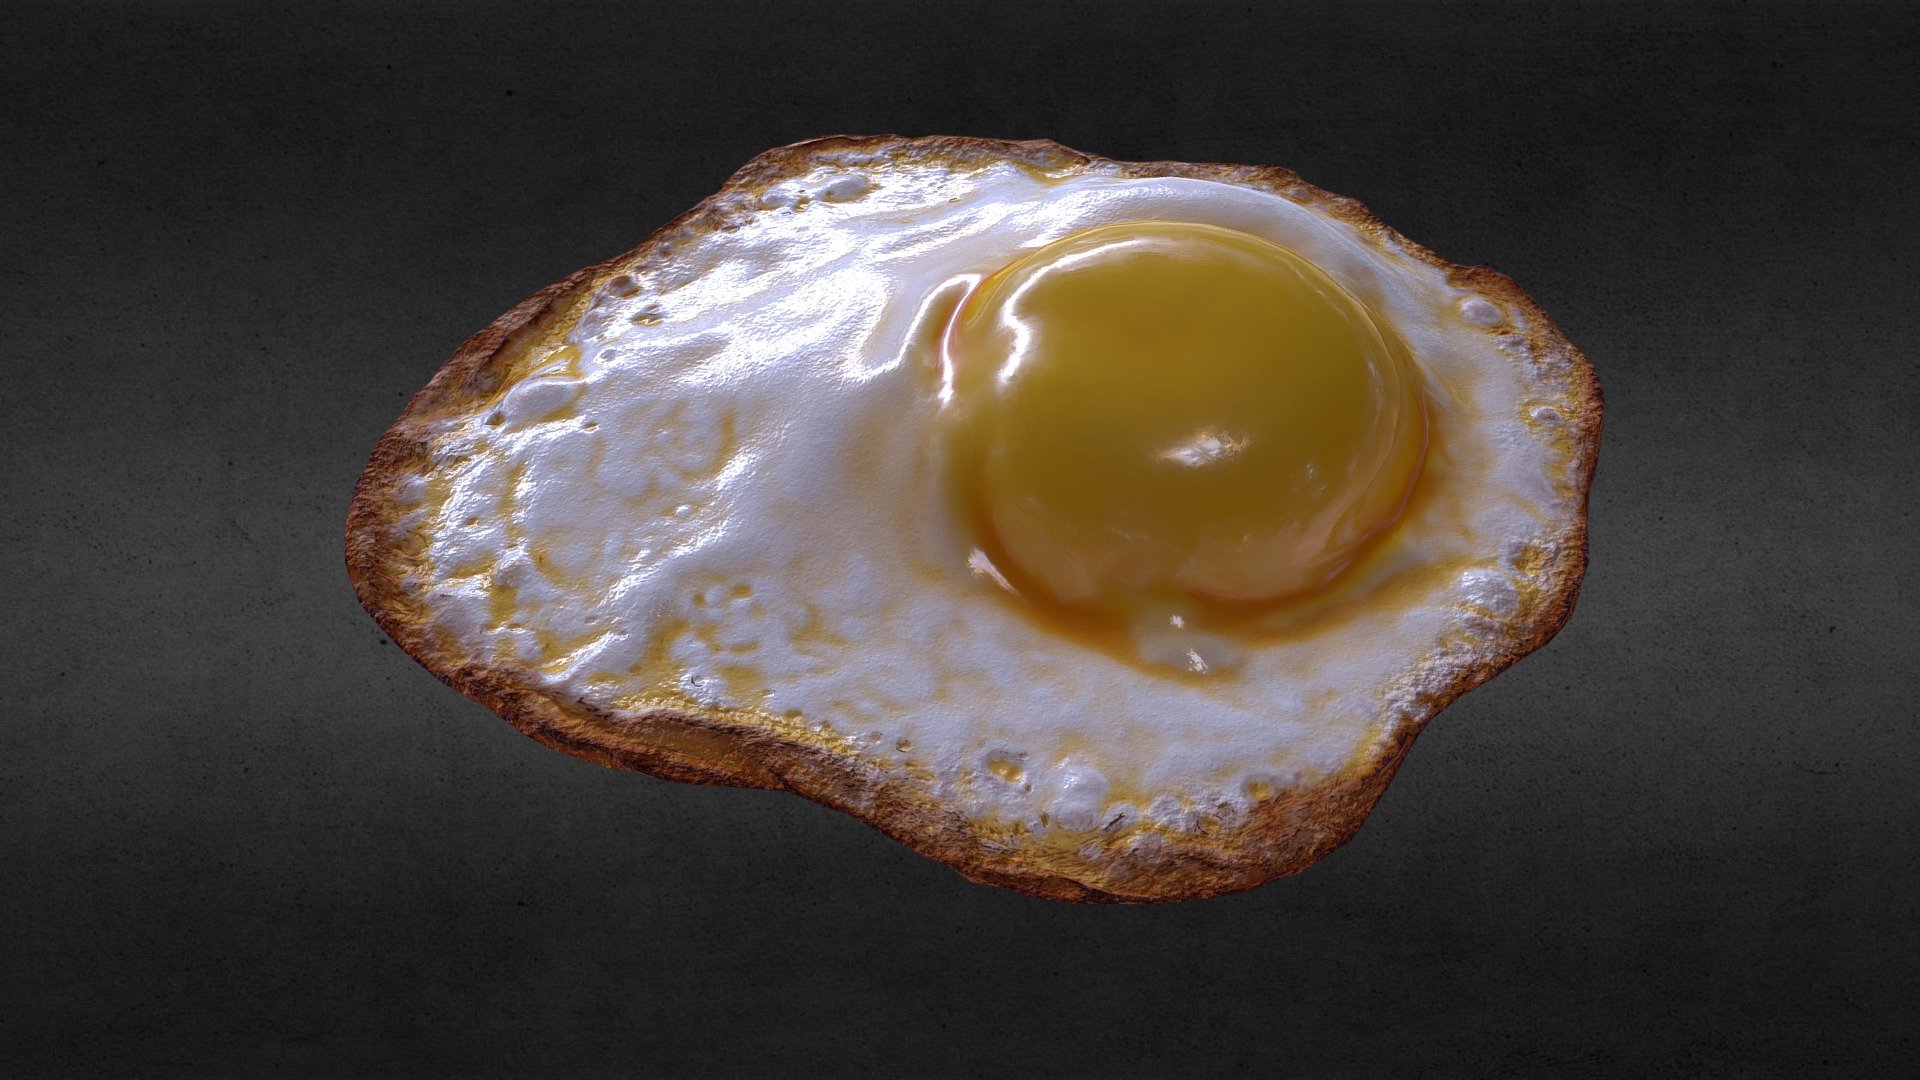 Fried egg.

more images at artstation 

https://www.artstation.com/artwork/oOr9D4 - Fried Egg - 3D model by asern_afri 3d model